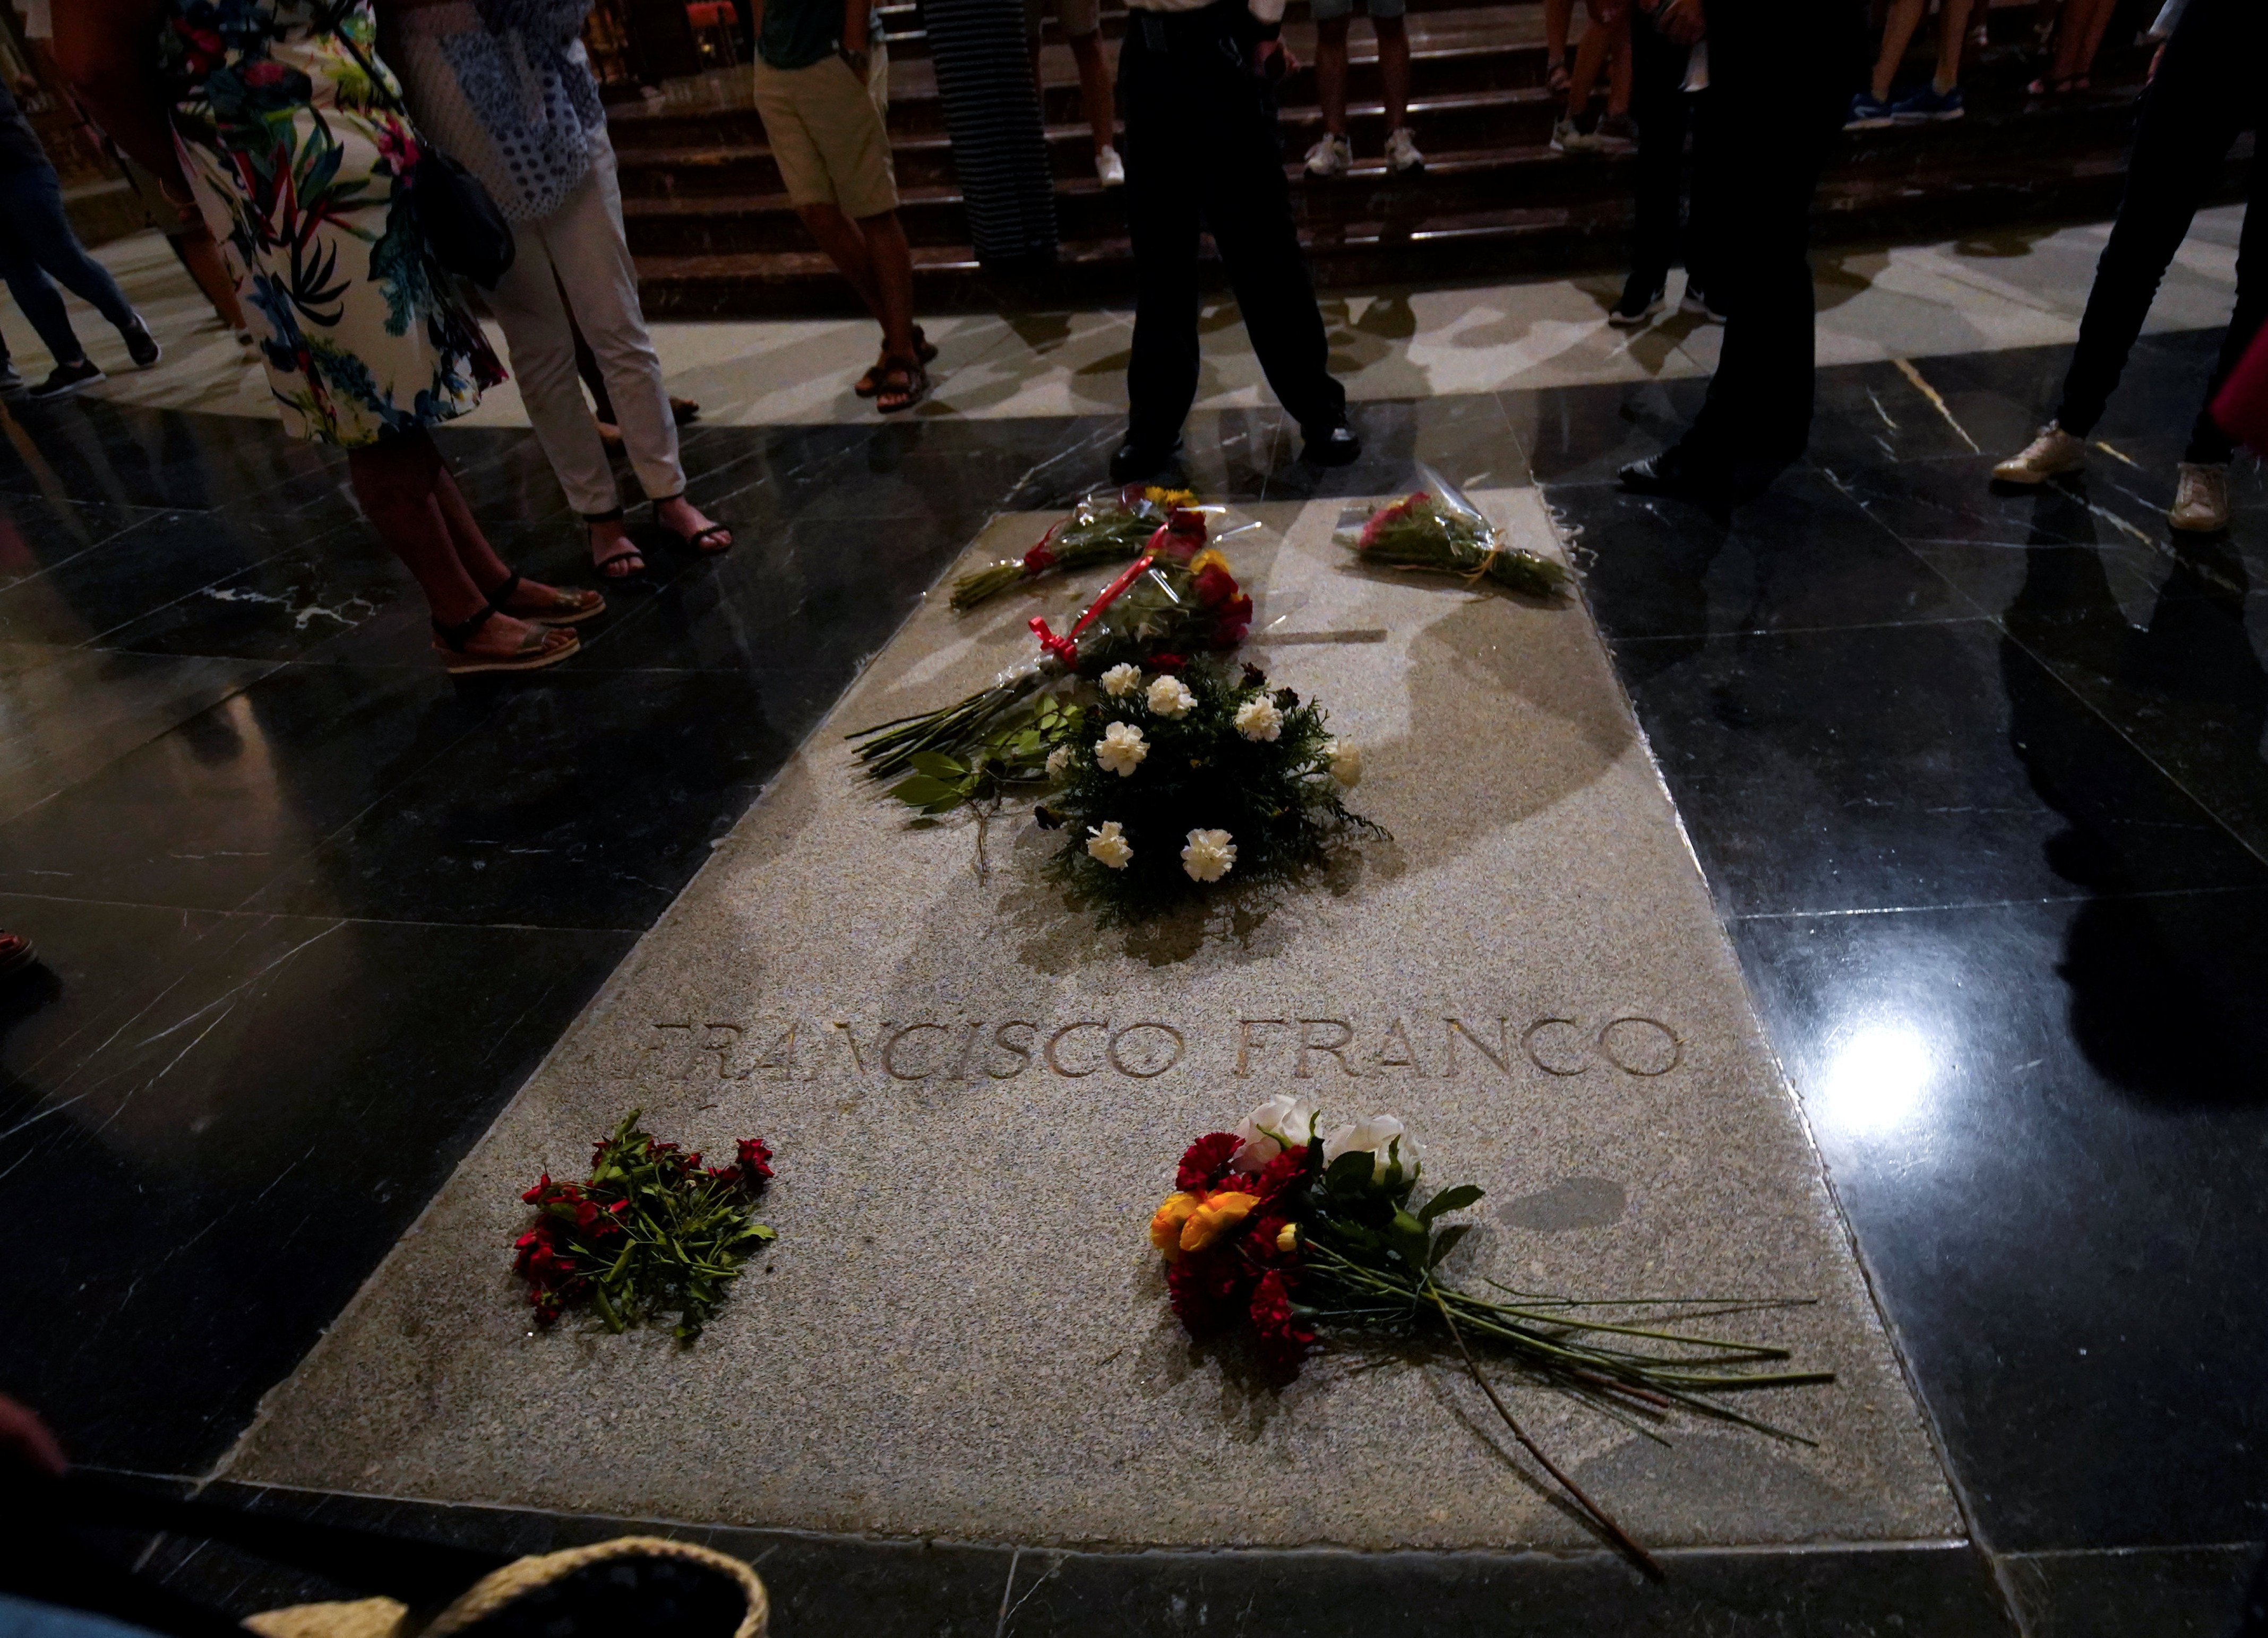 El Supremo duda a dónde trasladar los restos de Franco si avala su exhumación